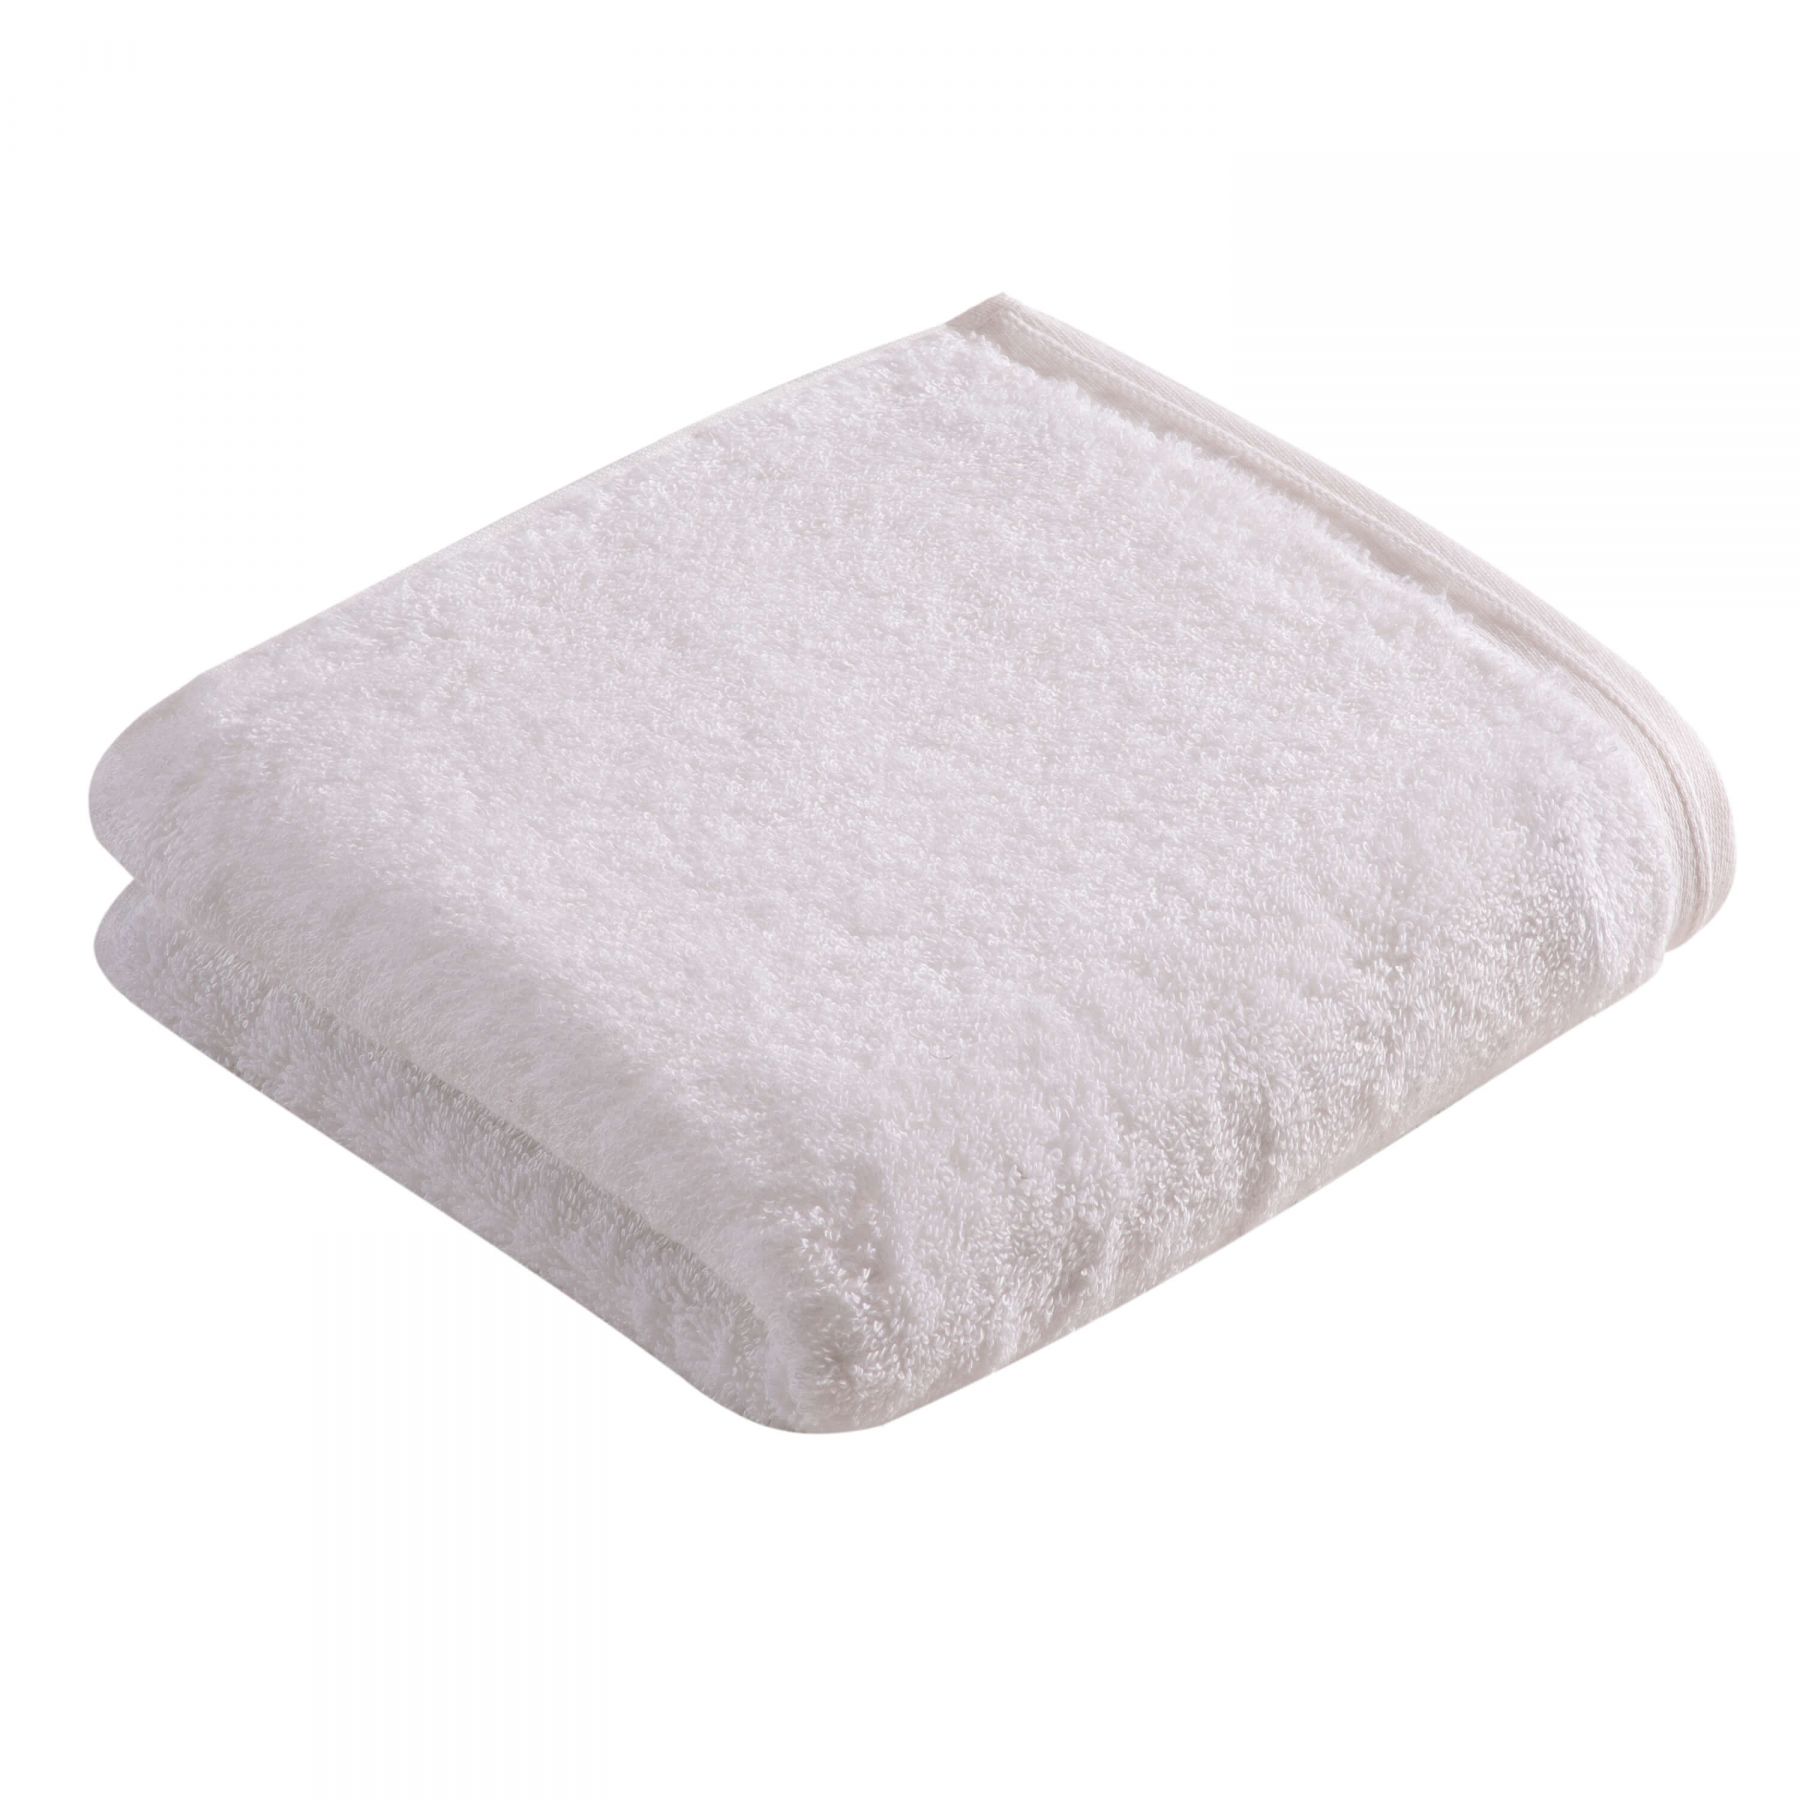 Элитное полотенце Vegan Life White ☞ Размер: 50 x 100 см